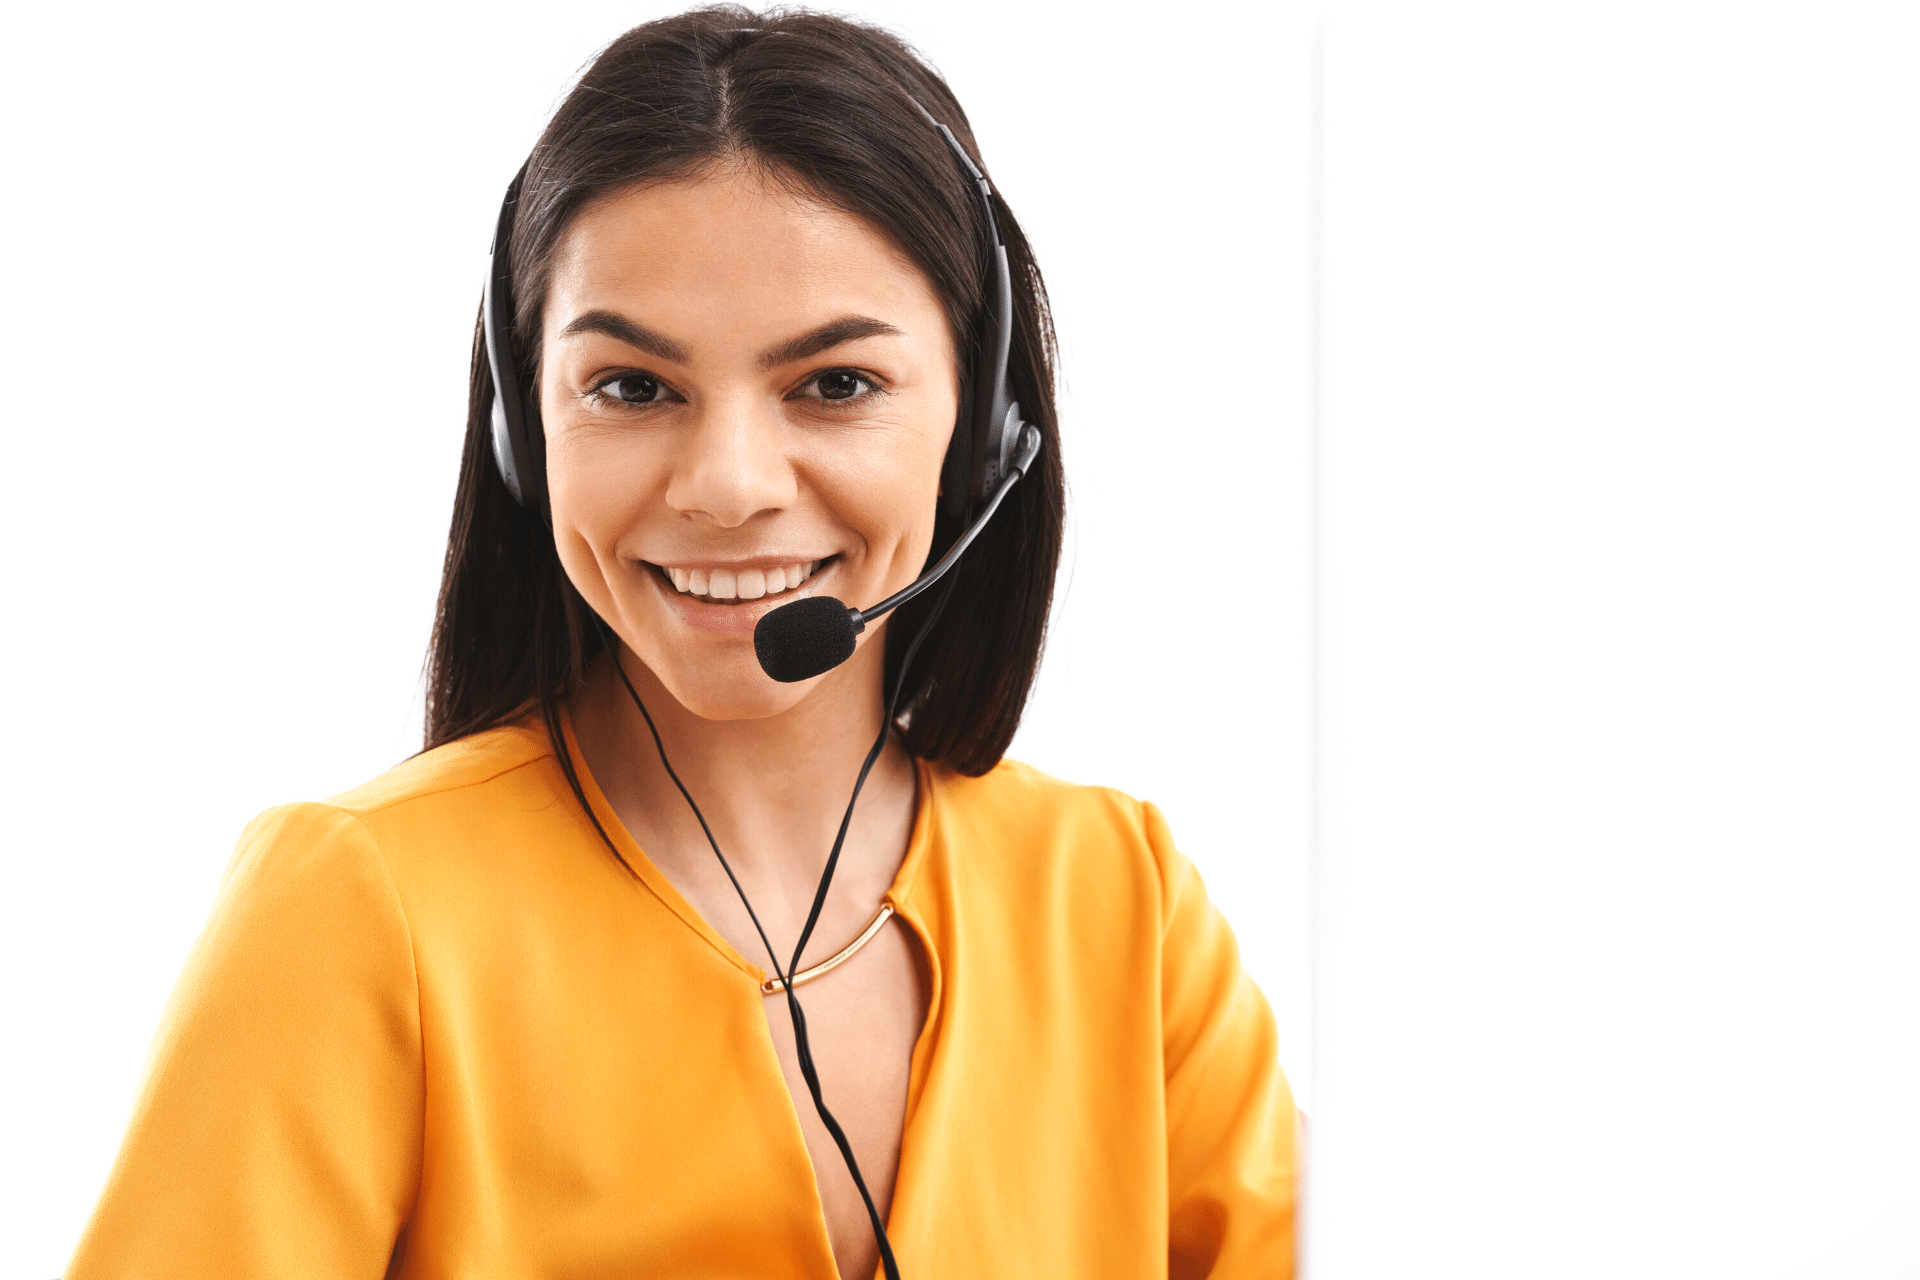 Joyful hotline assistant woman wearing headset.